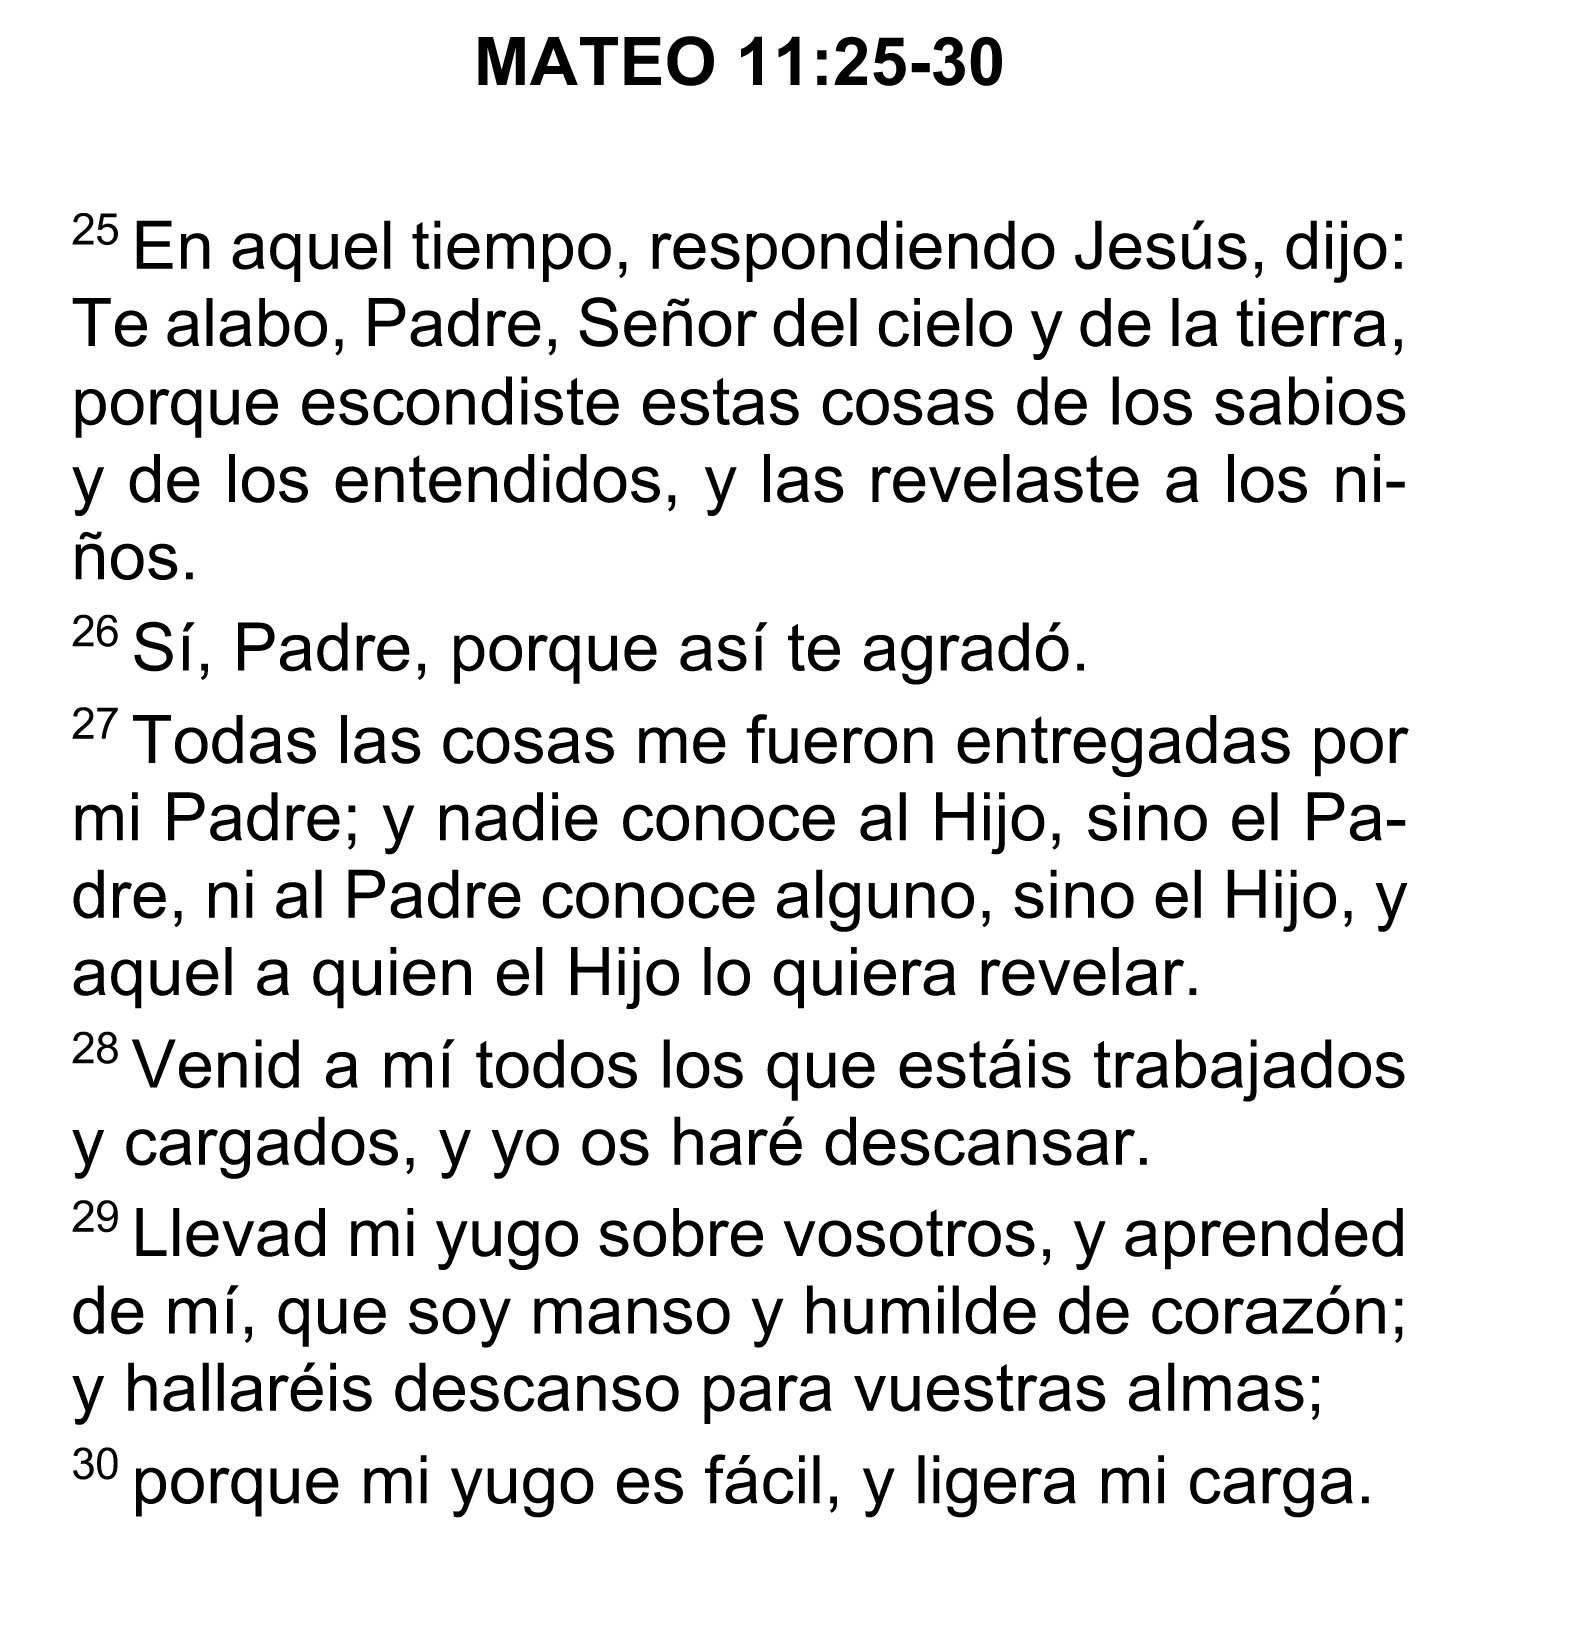 Mateo 11:25-30